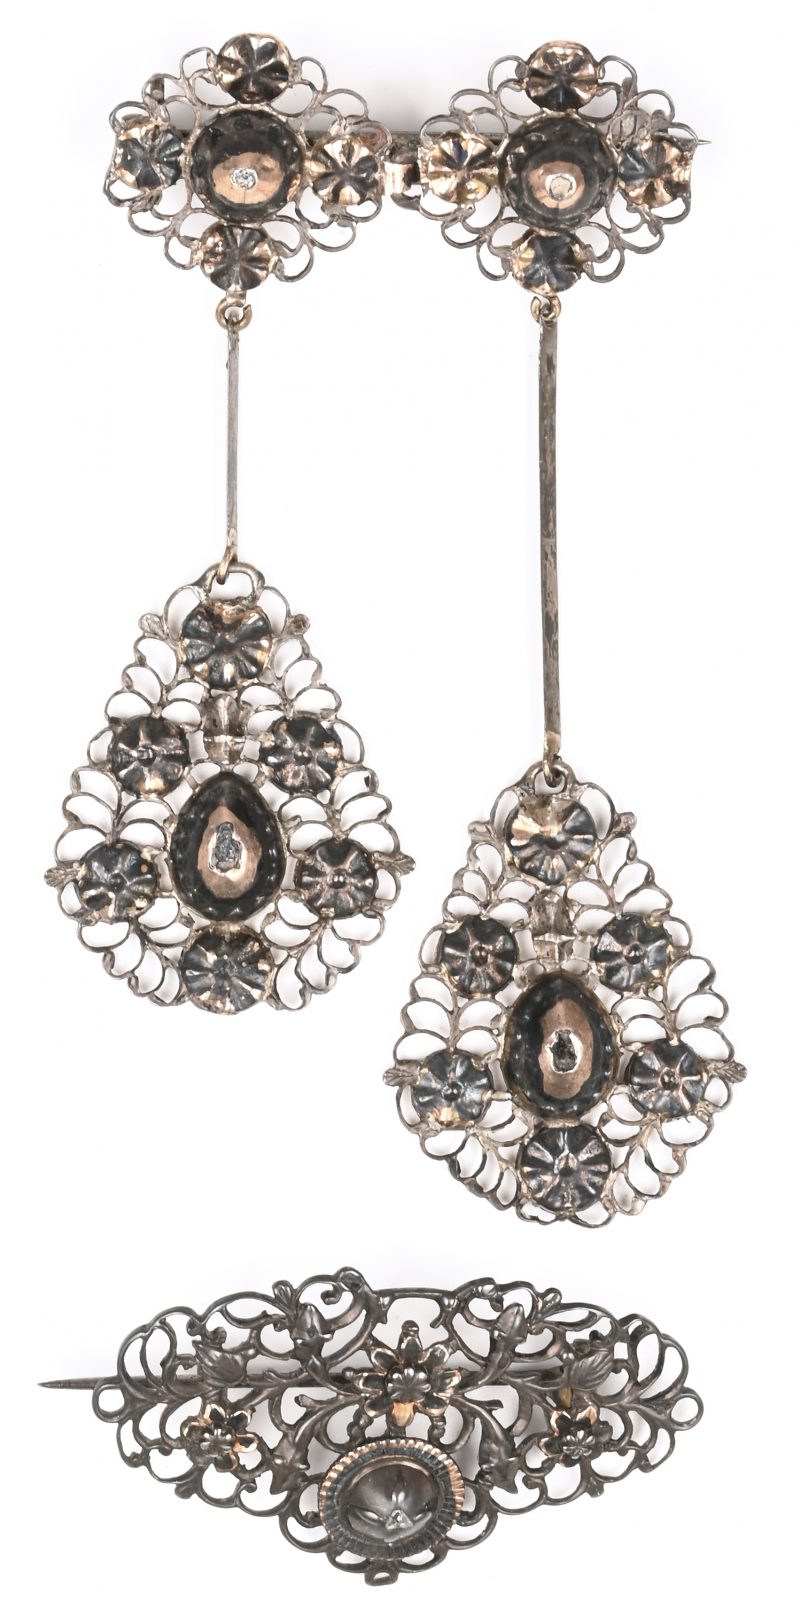 Twee 19de eeuwse zilveren broches met klein Vlaamse harten bezet met diamanten oude slijp.